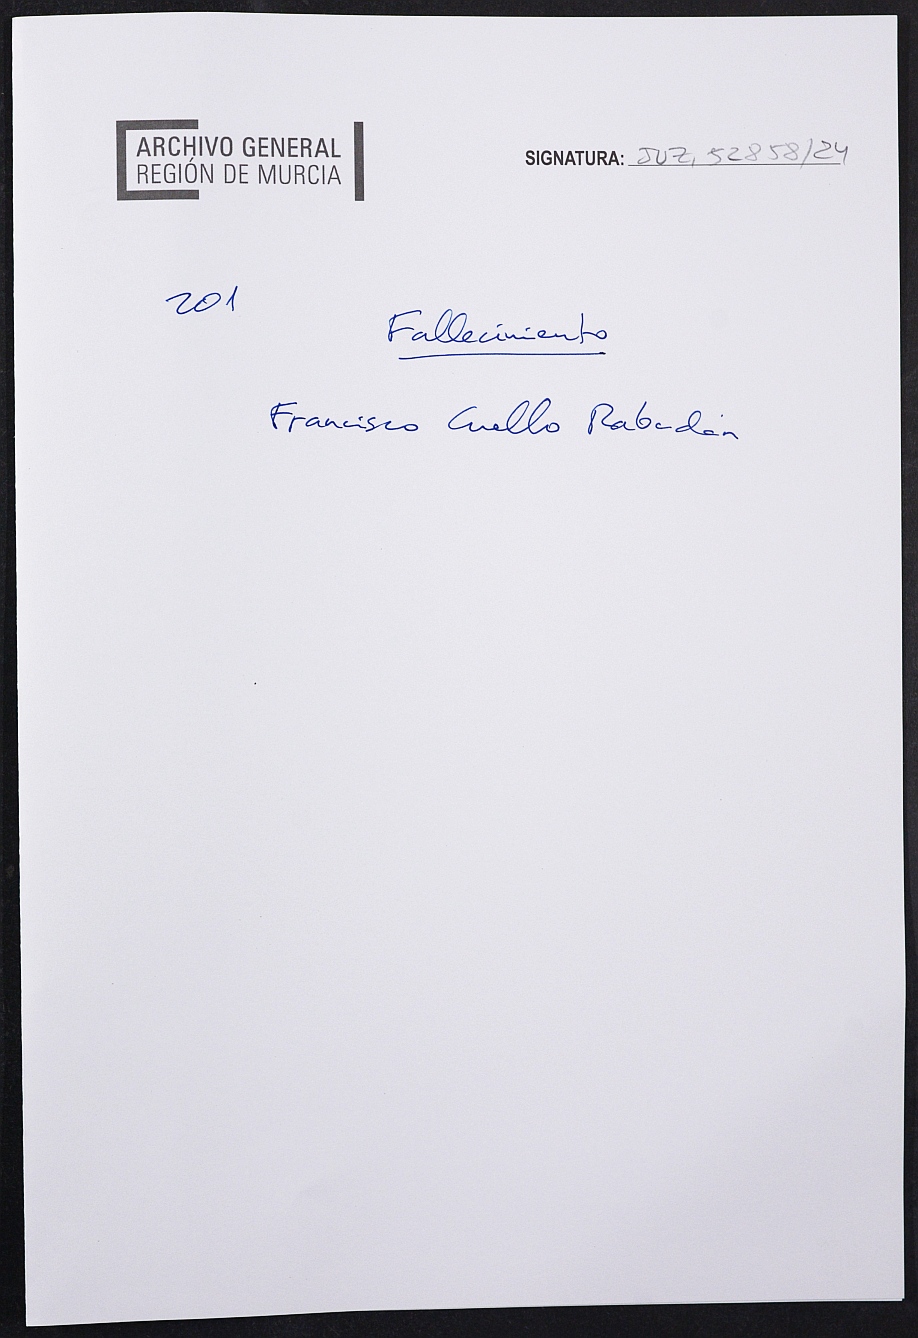 Expediente nº 201/1941 del Juzgado de Primera Instancia de Murcia para la inscripción en el Registro Civil por el fallecimiento en el frente de Francisco Cuello Rabadán.